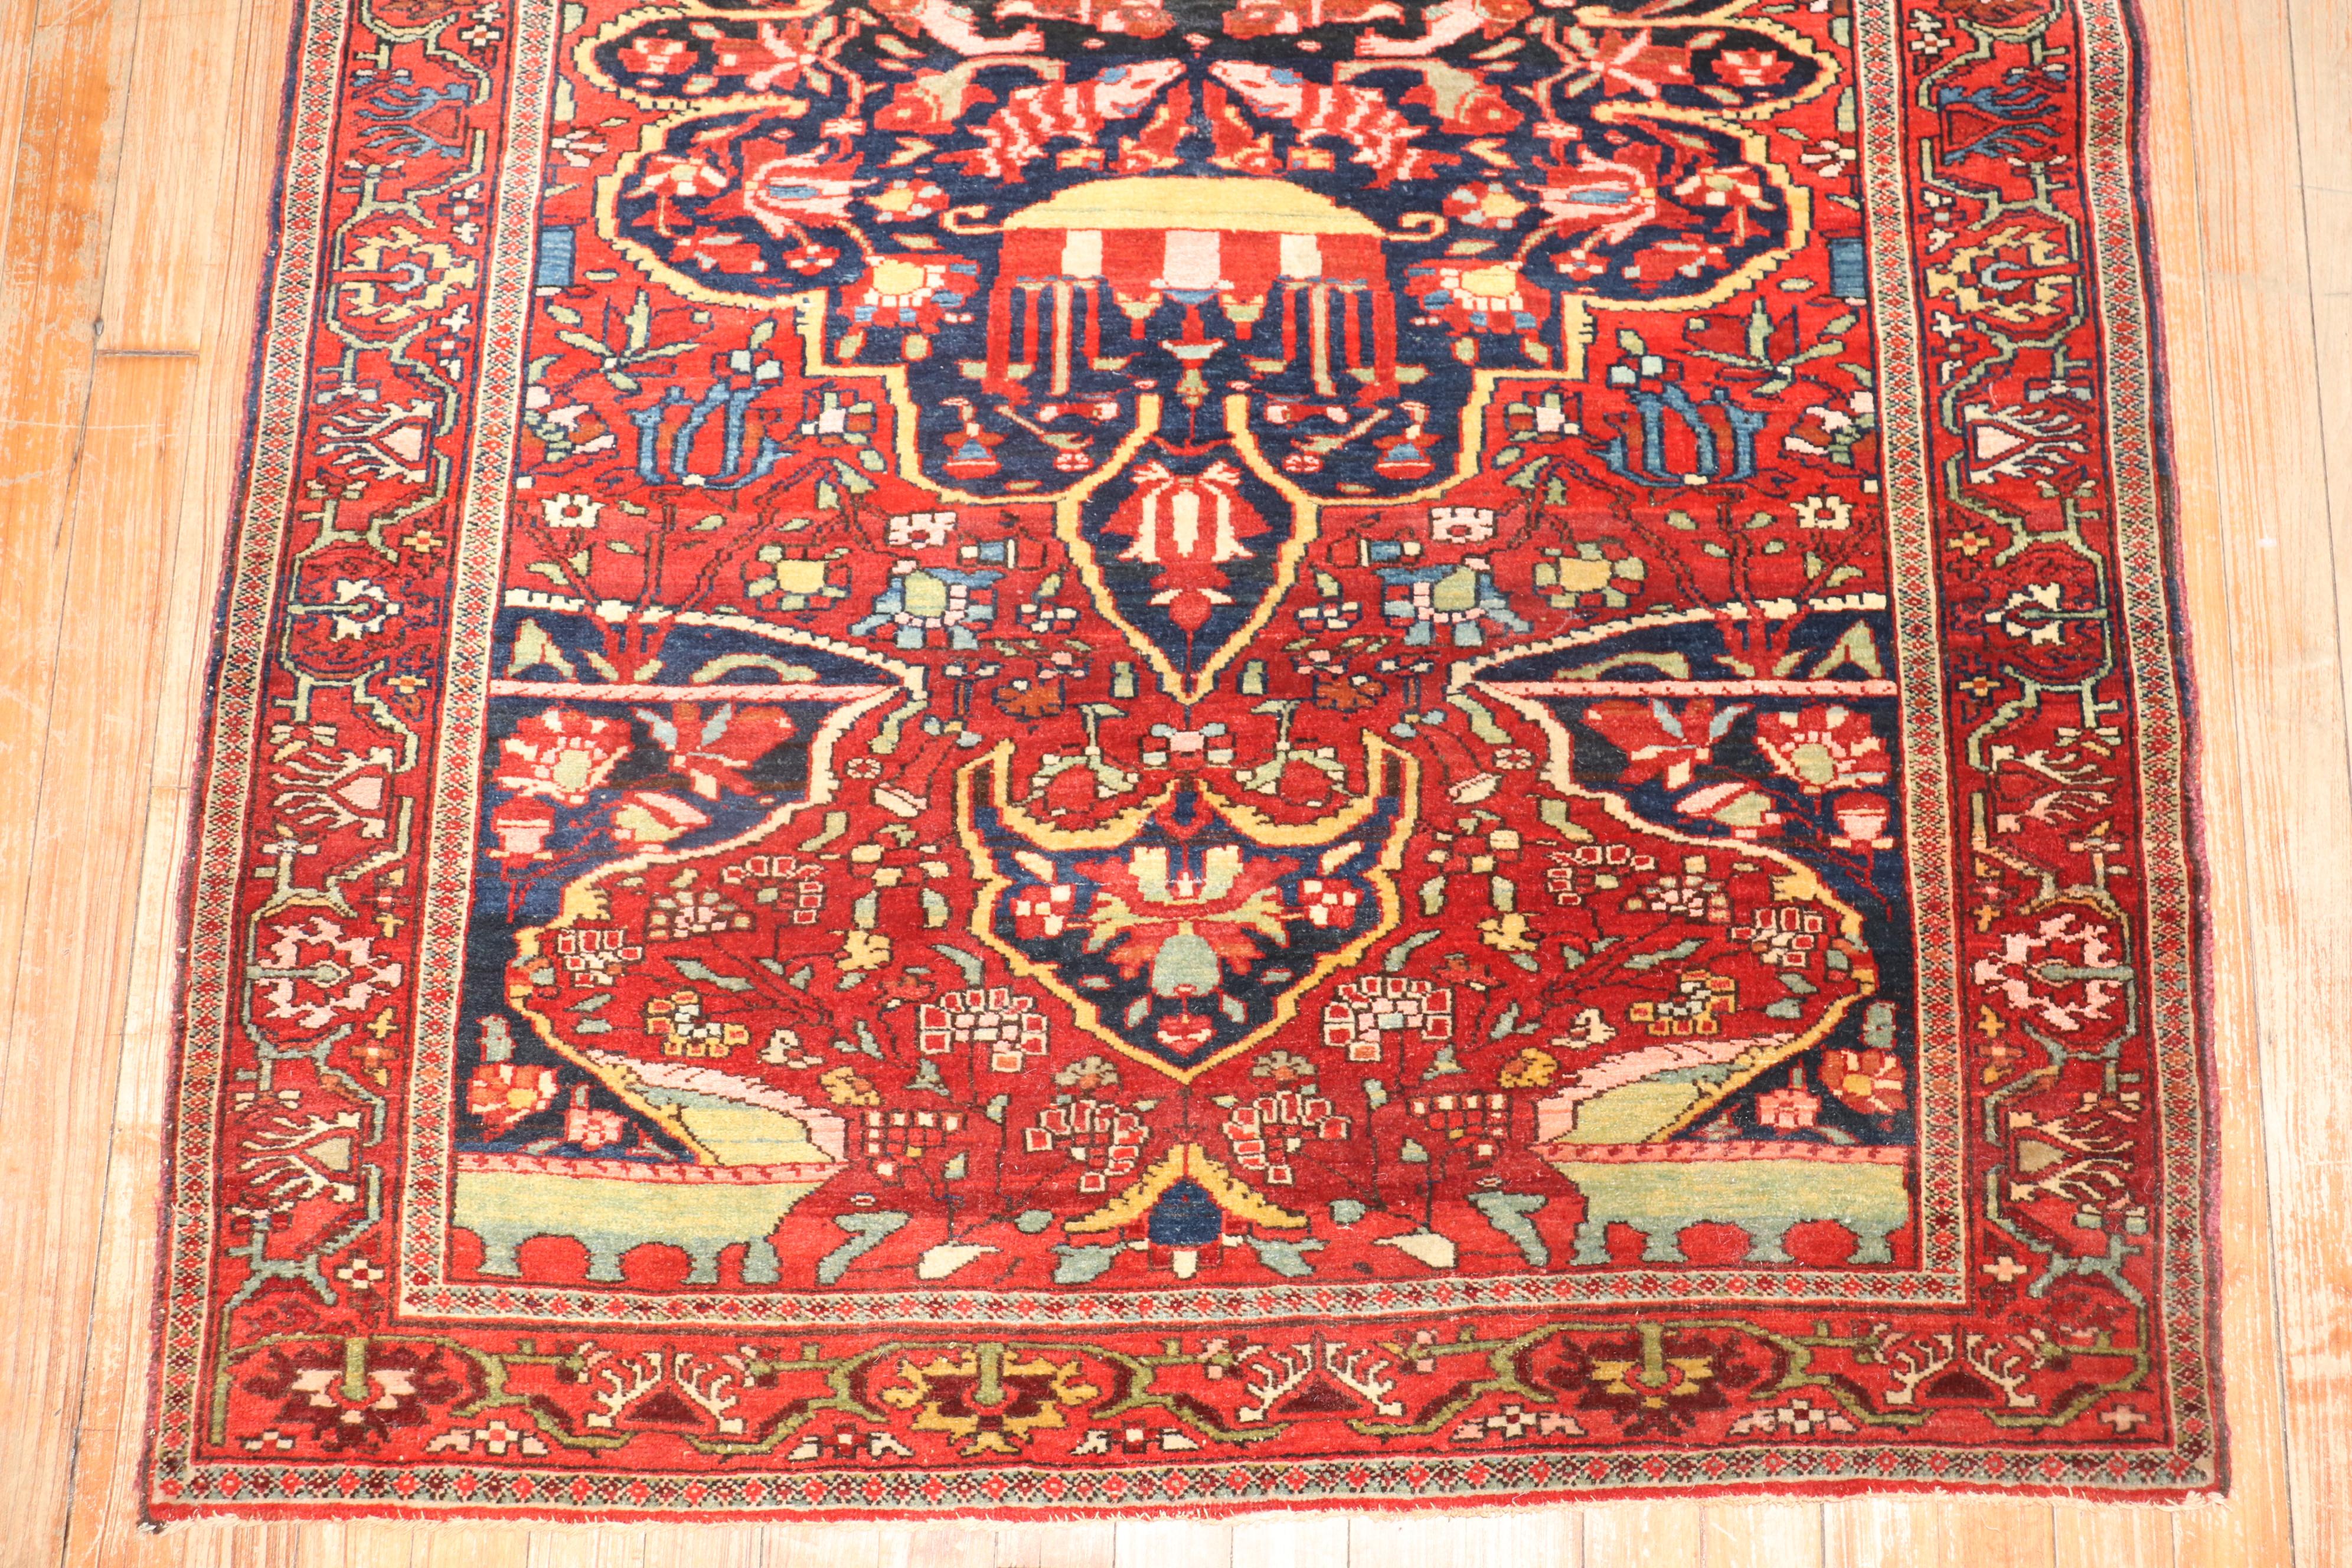 Hochwertiger persischer Sarouk Ferehan Teppich aus dem frühen 20. Jahrhundert. Tiefrotes Feld und Bordüre mit einem marineblauen Medaillon und Akzenten in Blau und Grün. 

Maße: ''3'5'' x 4'10''.